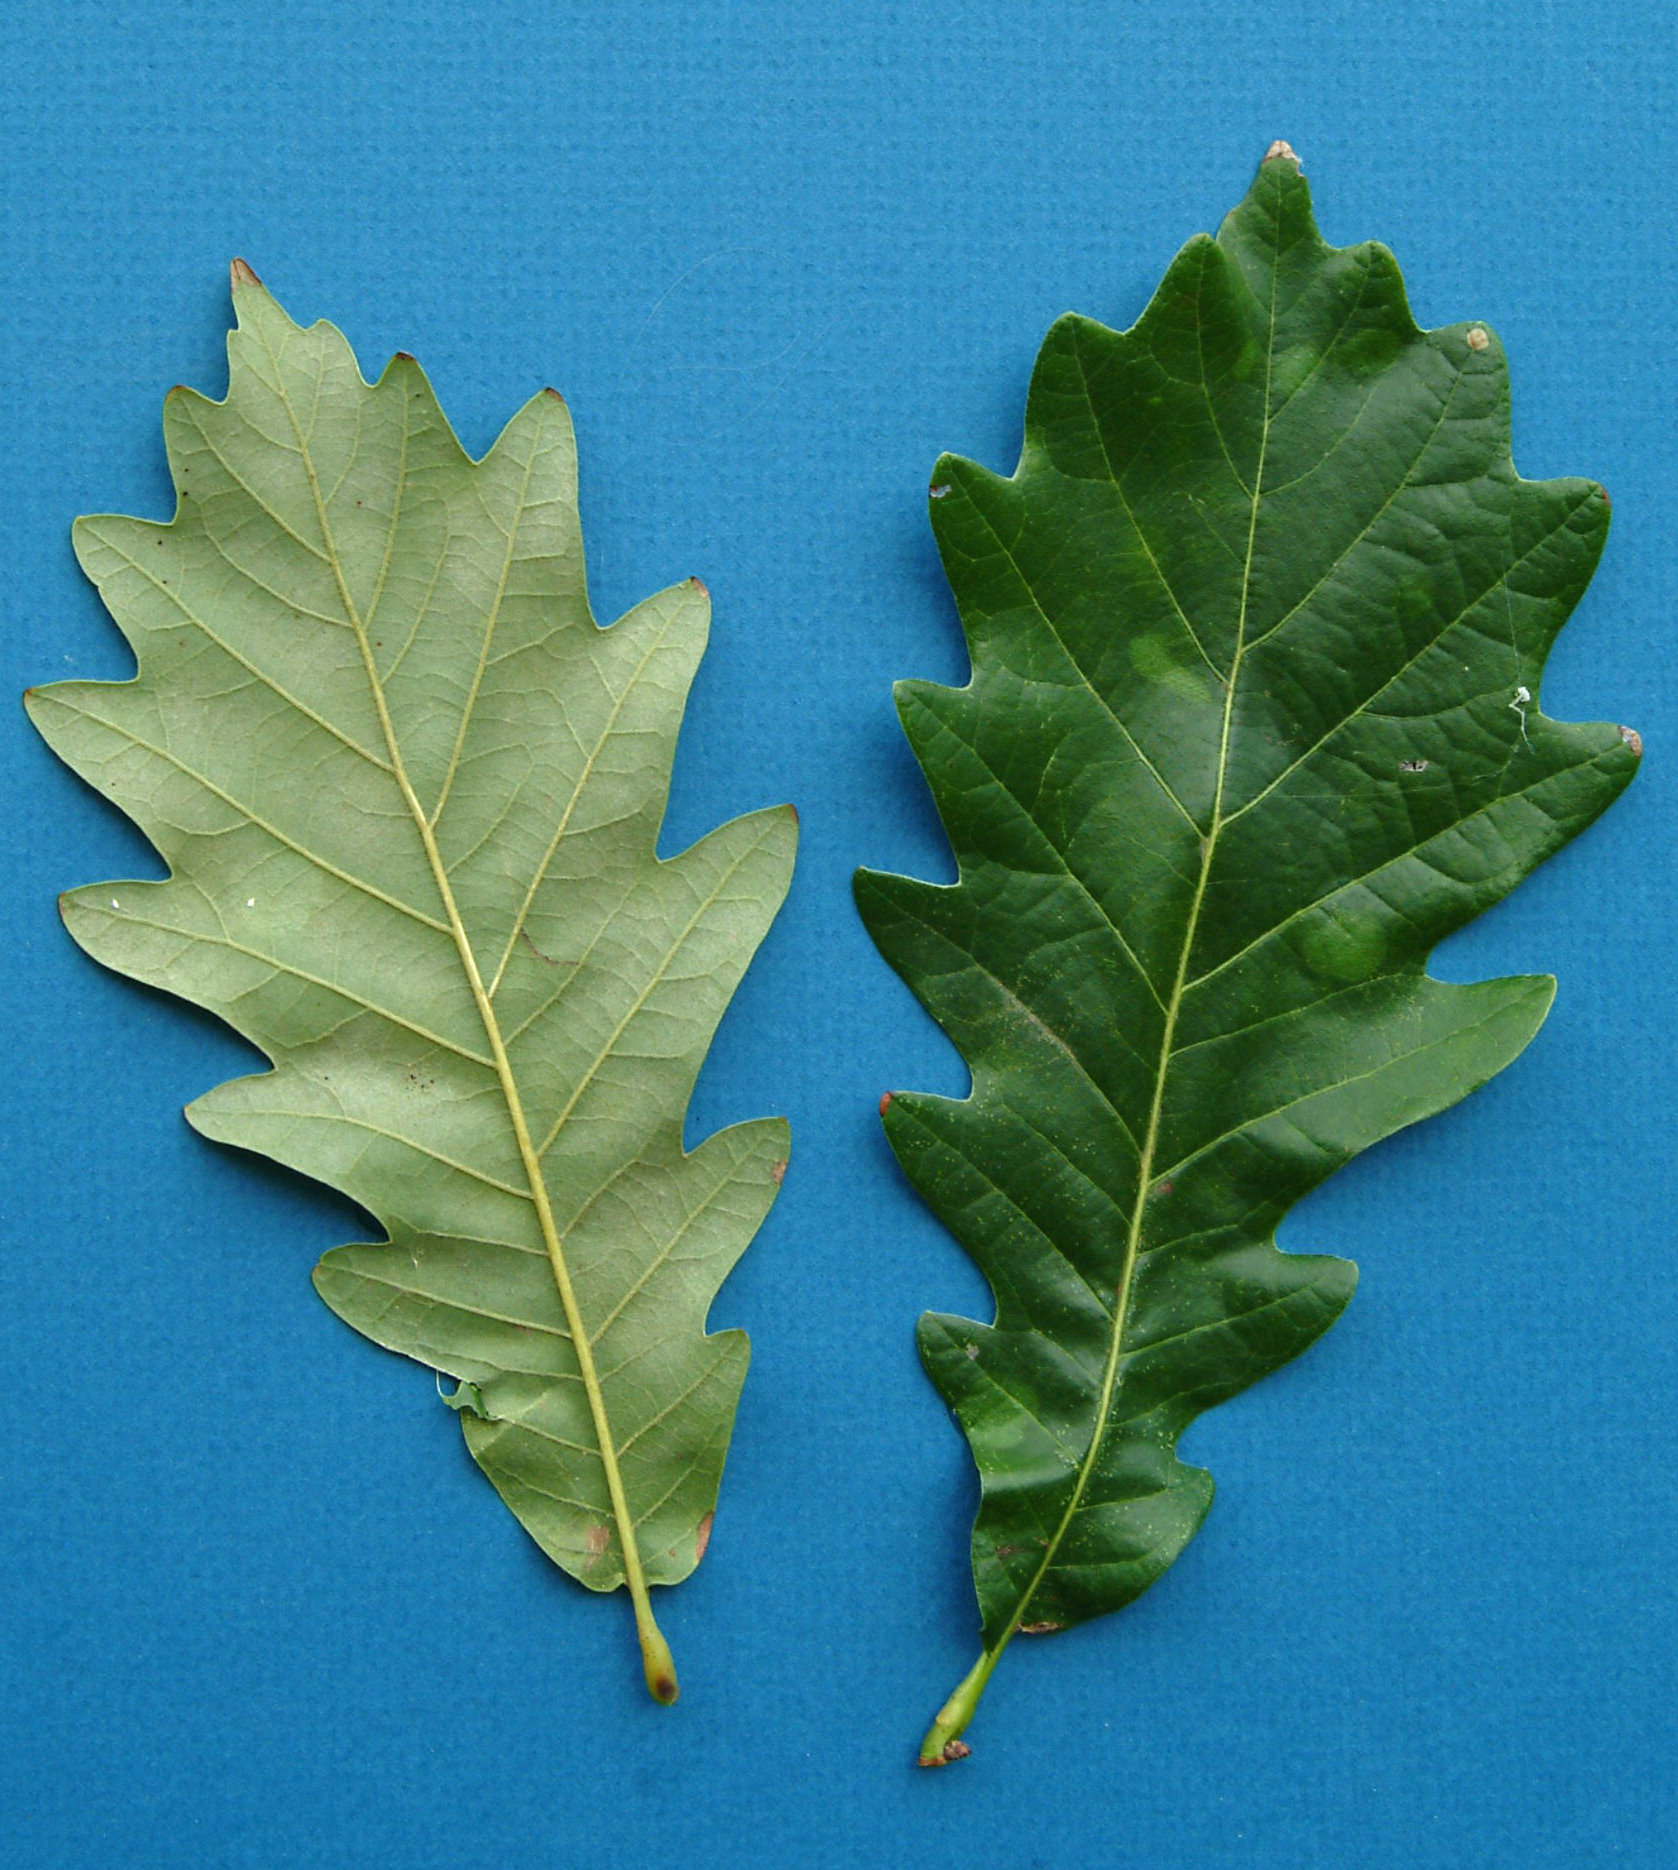 File:Kindred Spirit hybrid oak leaves.jpg - Wikimedia Commons